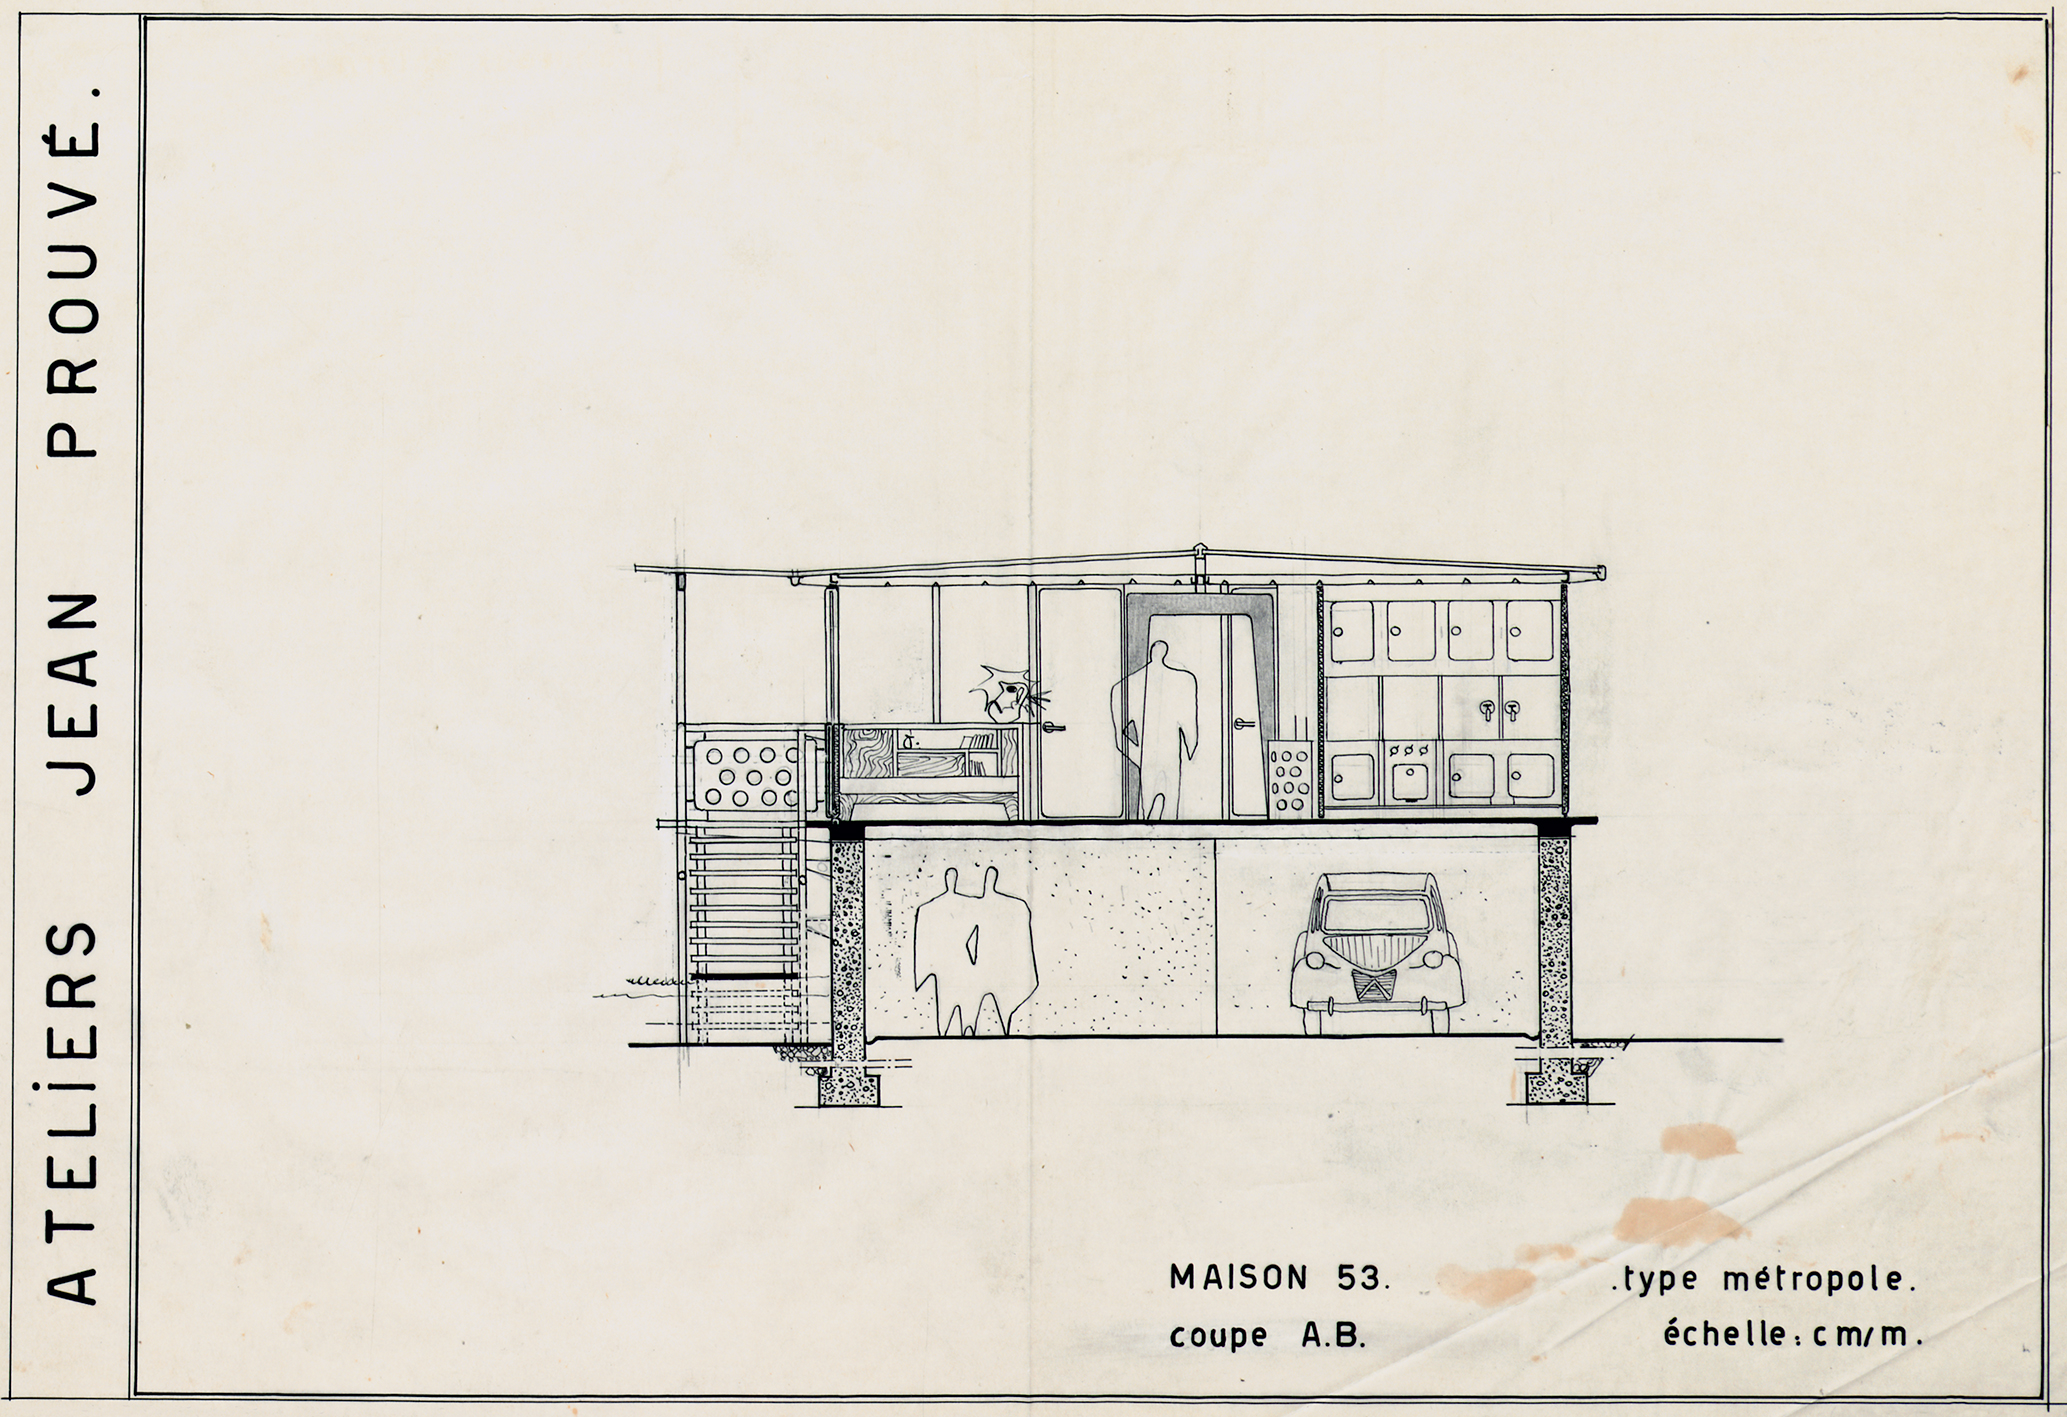 Ateliers Jean Prouvé. “House 53, Métropole type, section A.B.”. Plan no. 180.250, 1953.